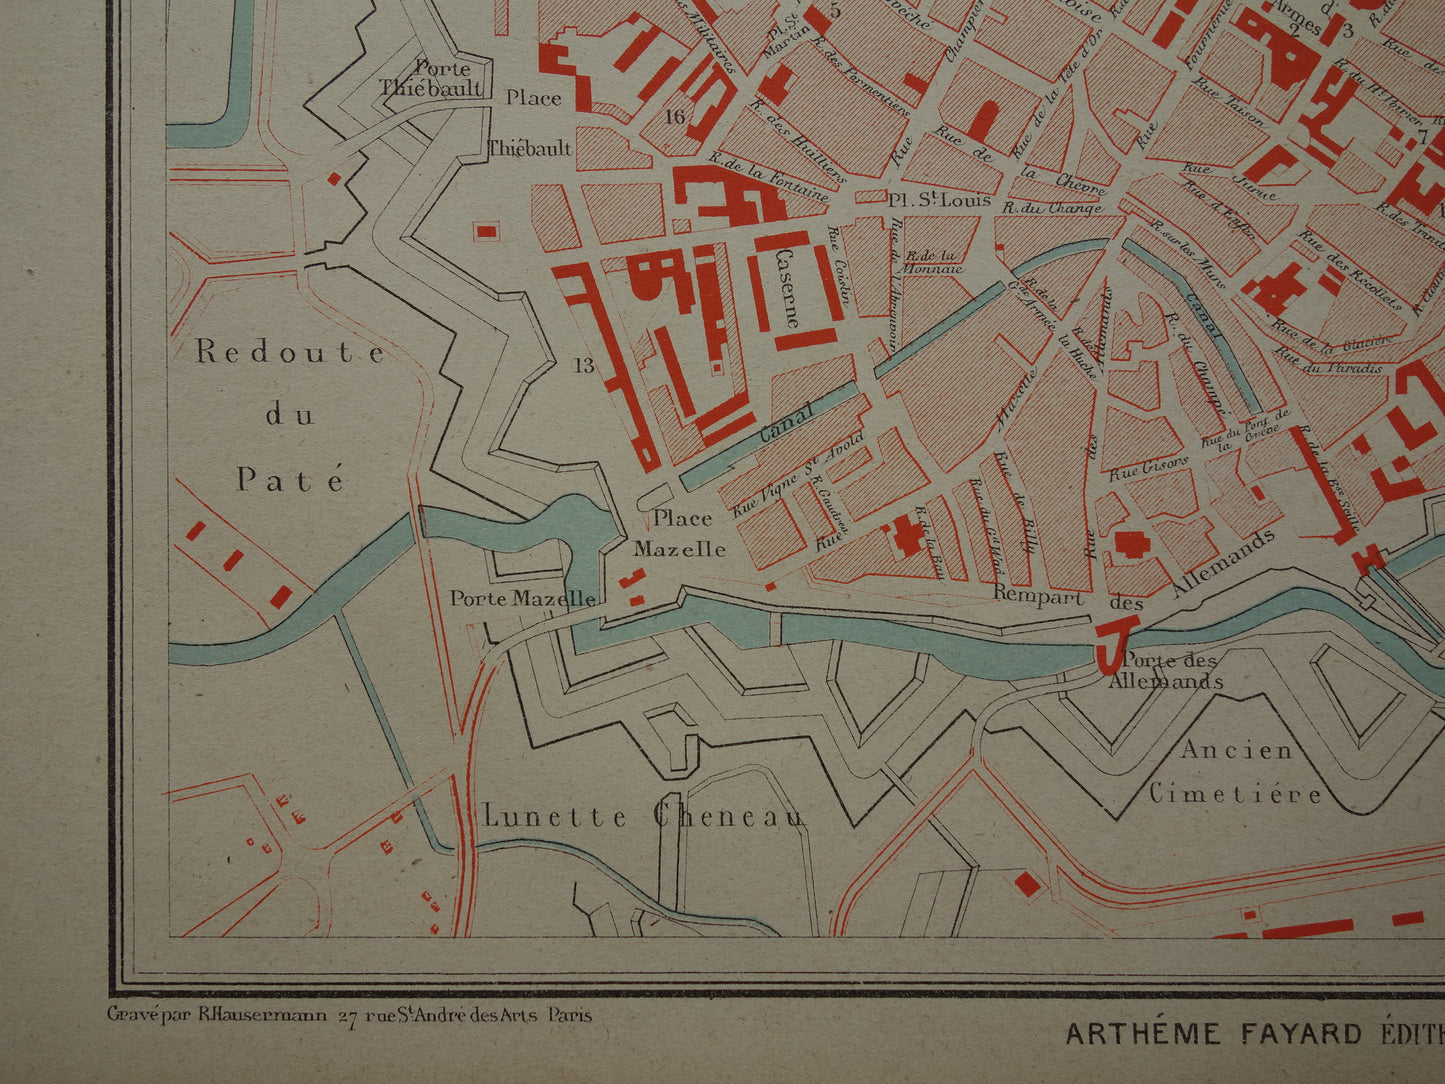 METZ oude kaart van Metz Frankrijk uit 1879 originele antieke Franse plattegrond